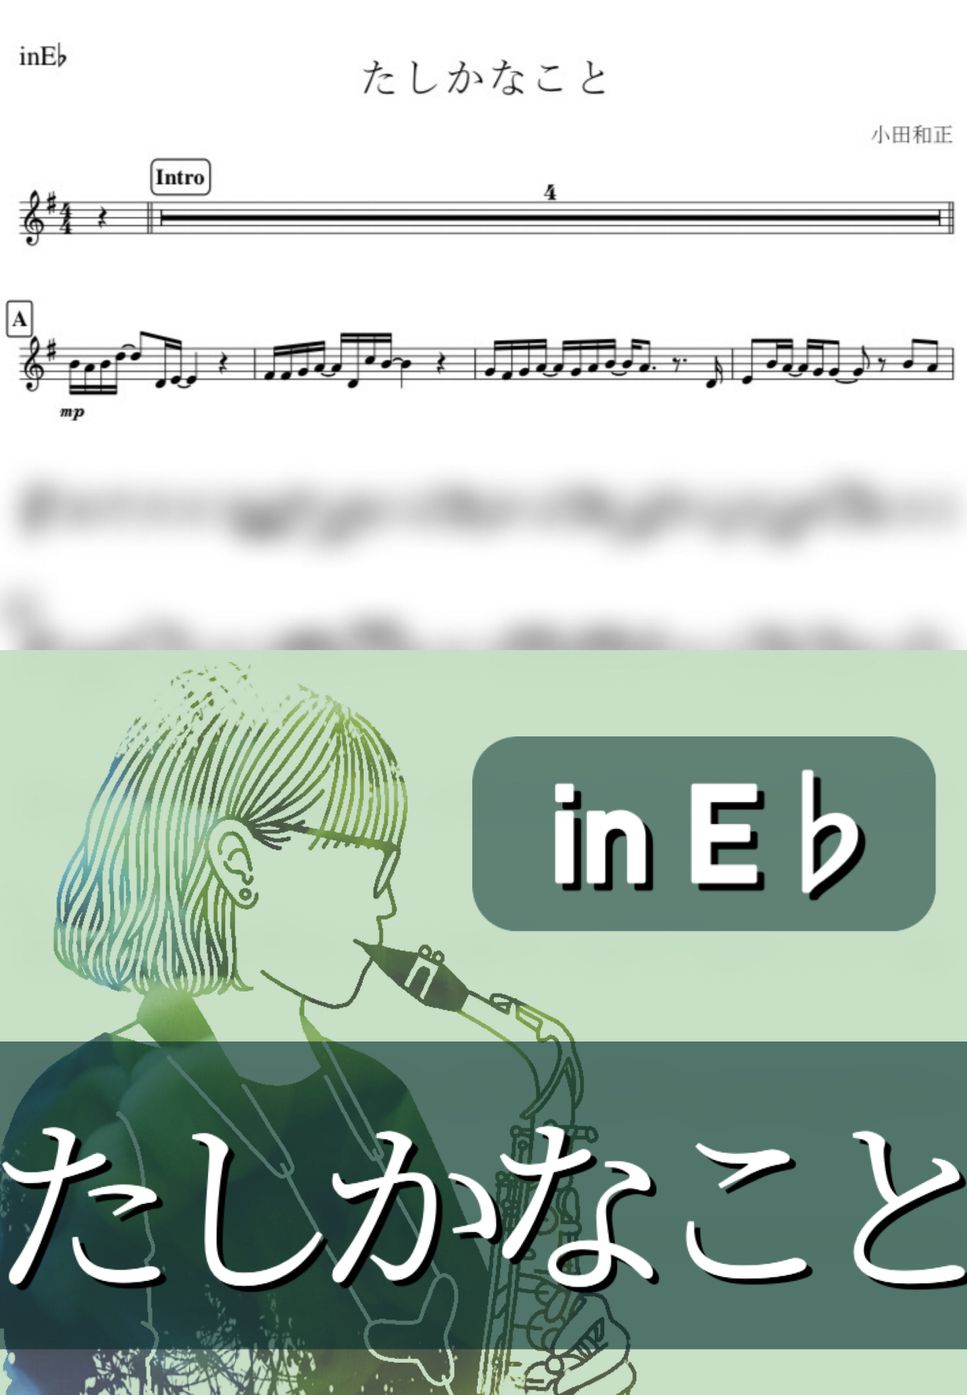 小田和正 - たしかなこと (E♭) by kanamusic